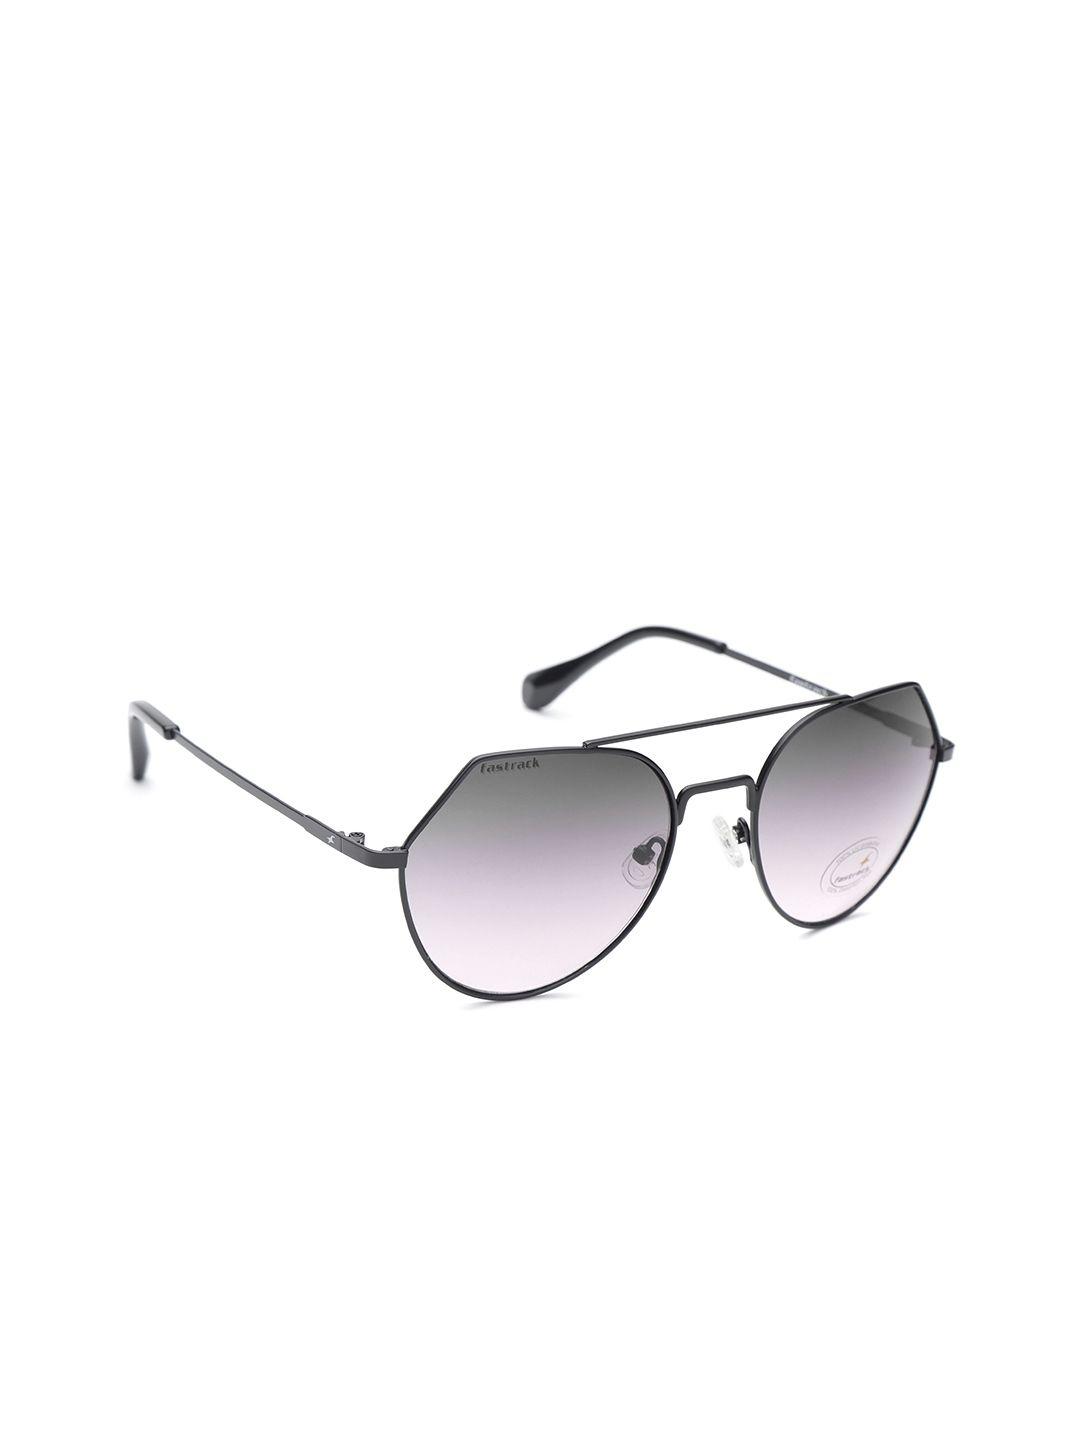 fastrack-women-oval-sunglasses-nbm192bk4f